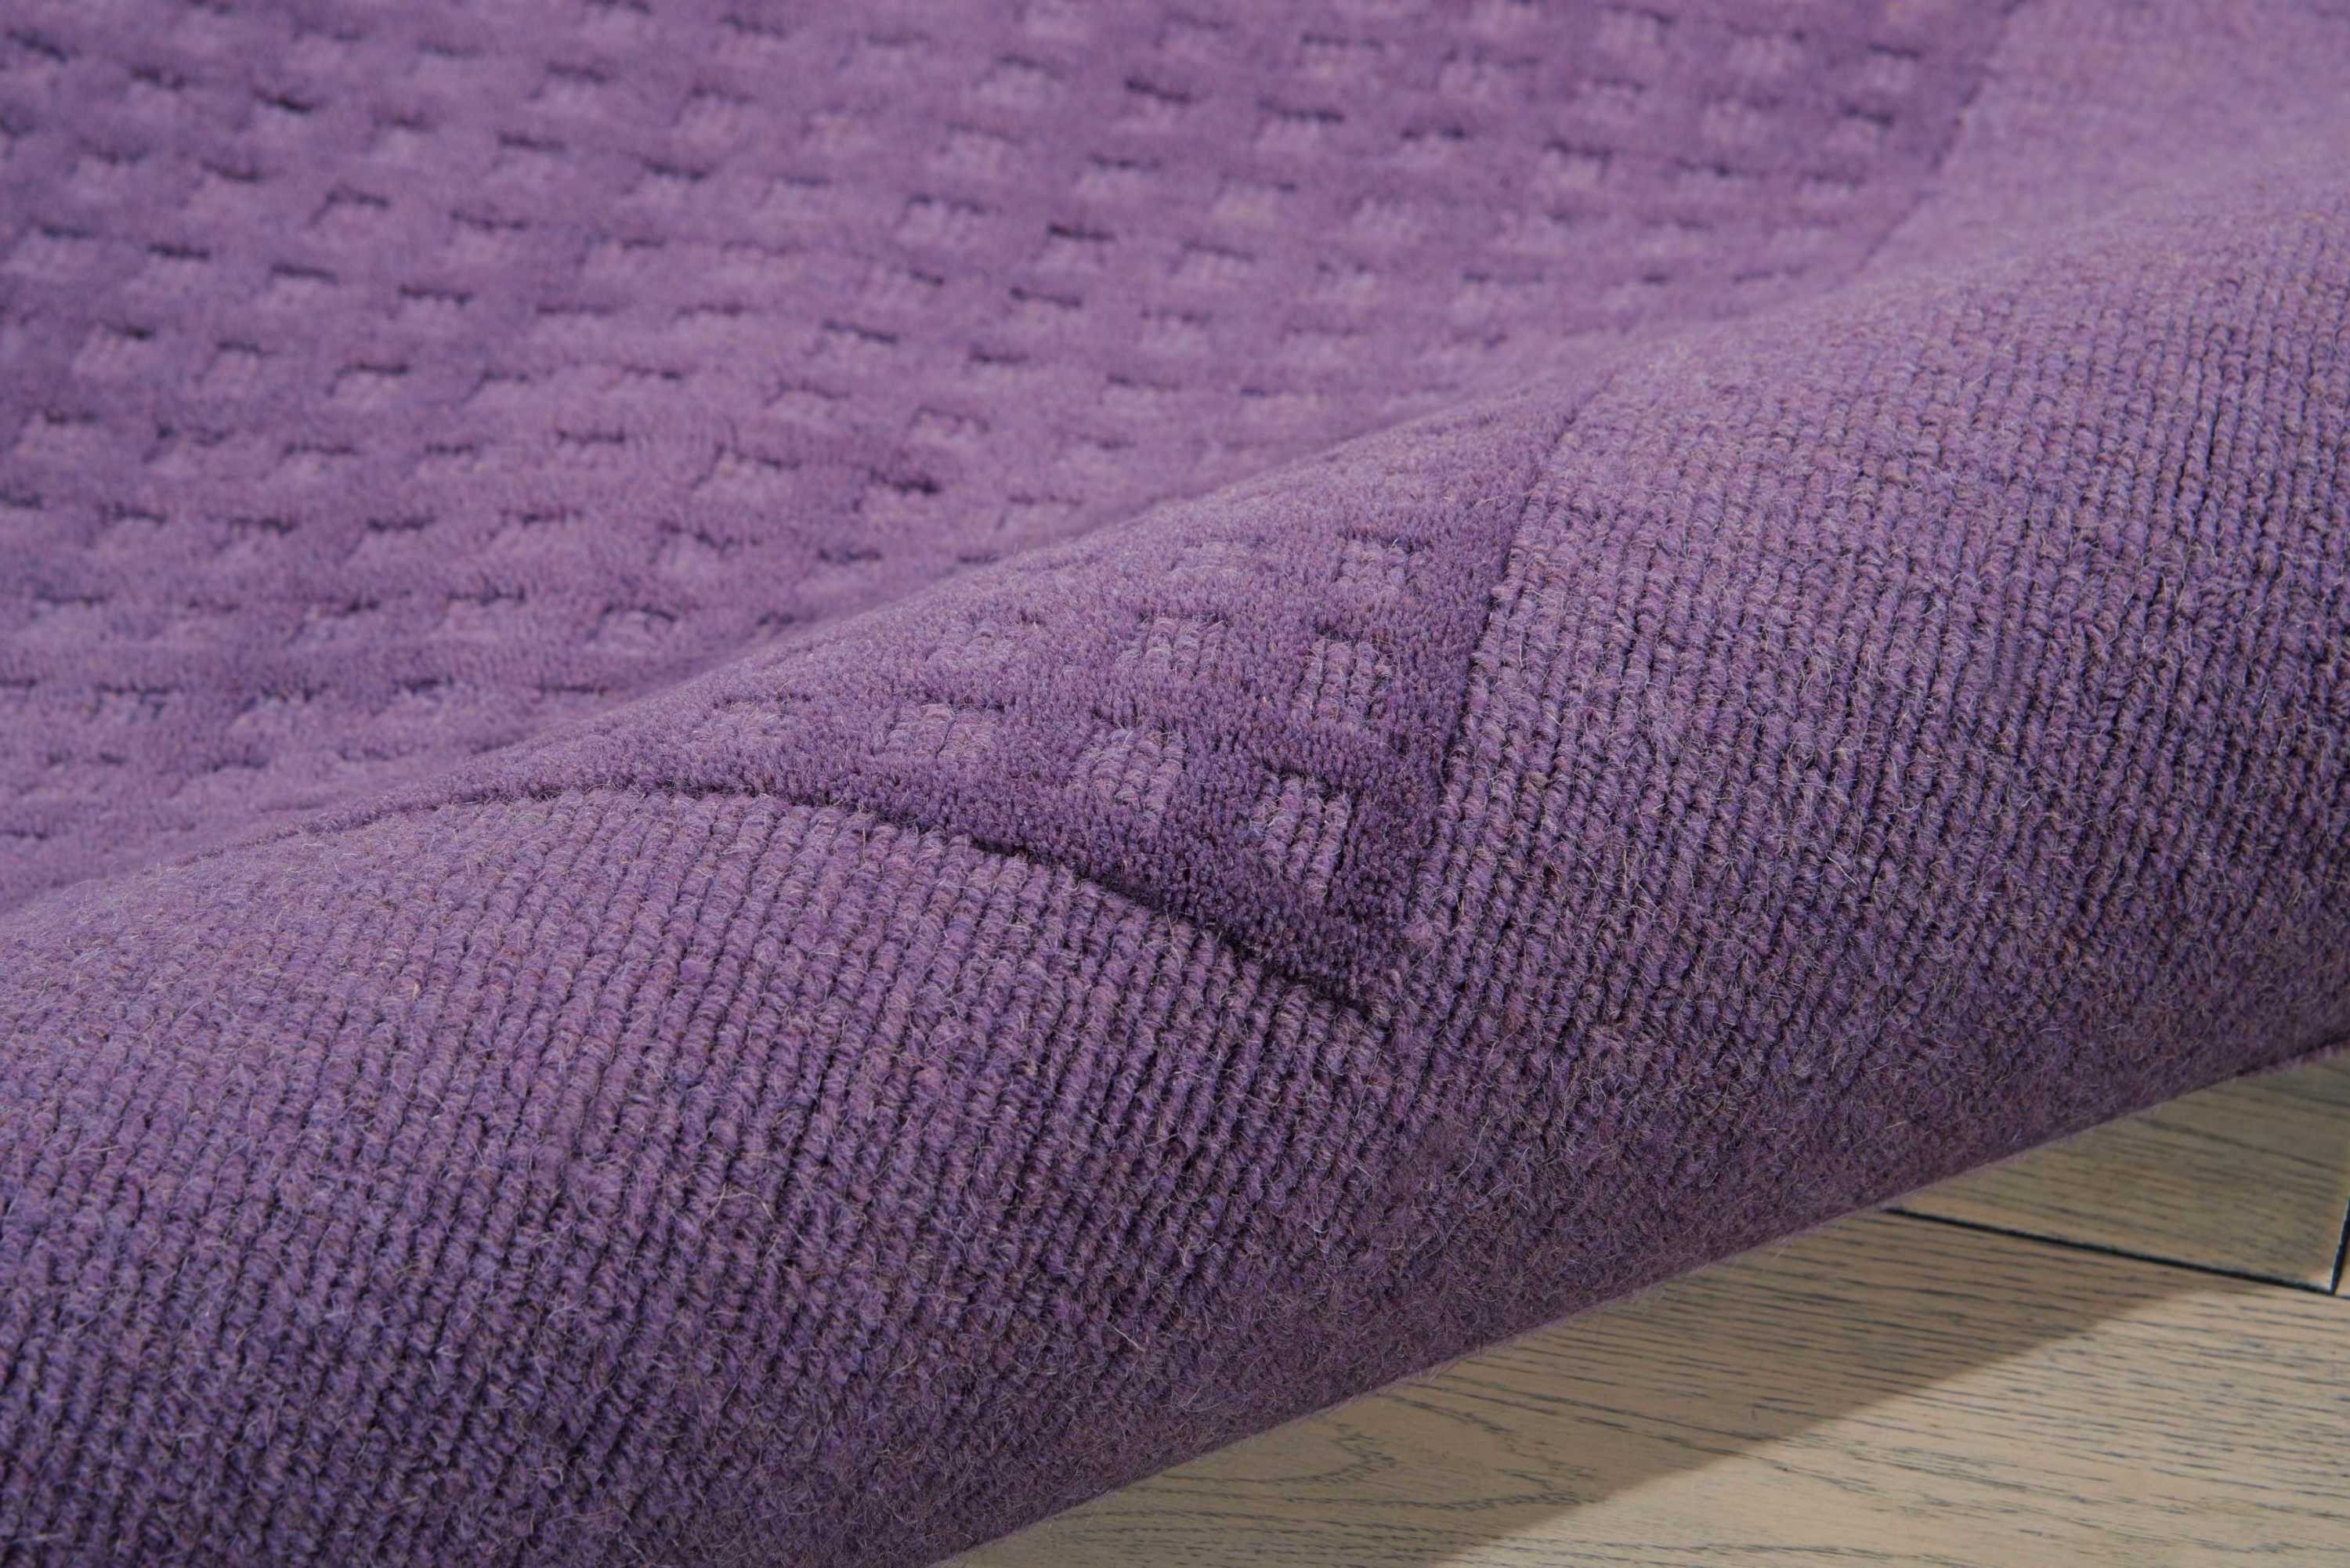 Nourison Westport Solid Purple 3'6" x 5'6" Area Rug, (4x6) - image 5 of 5